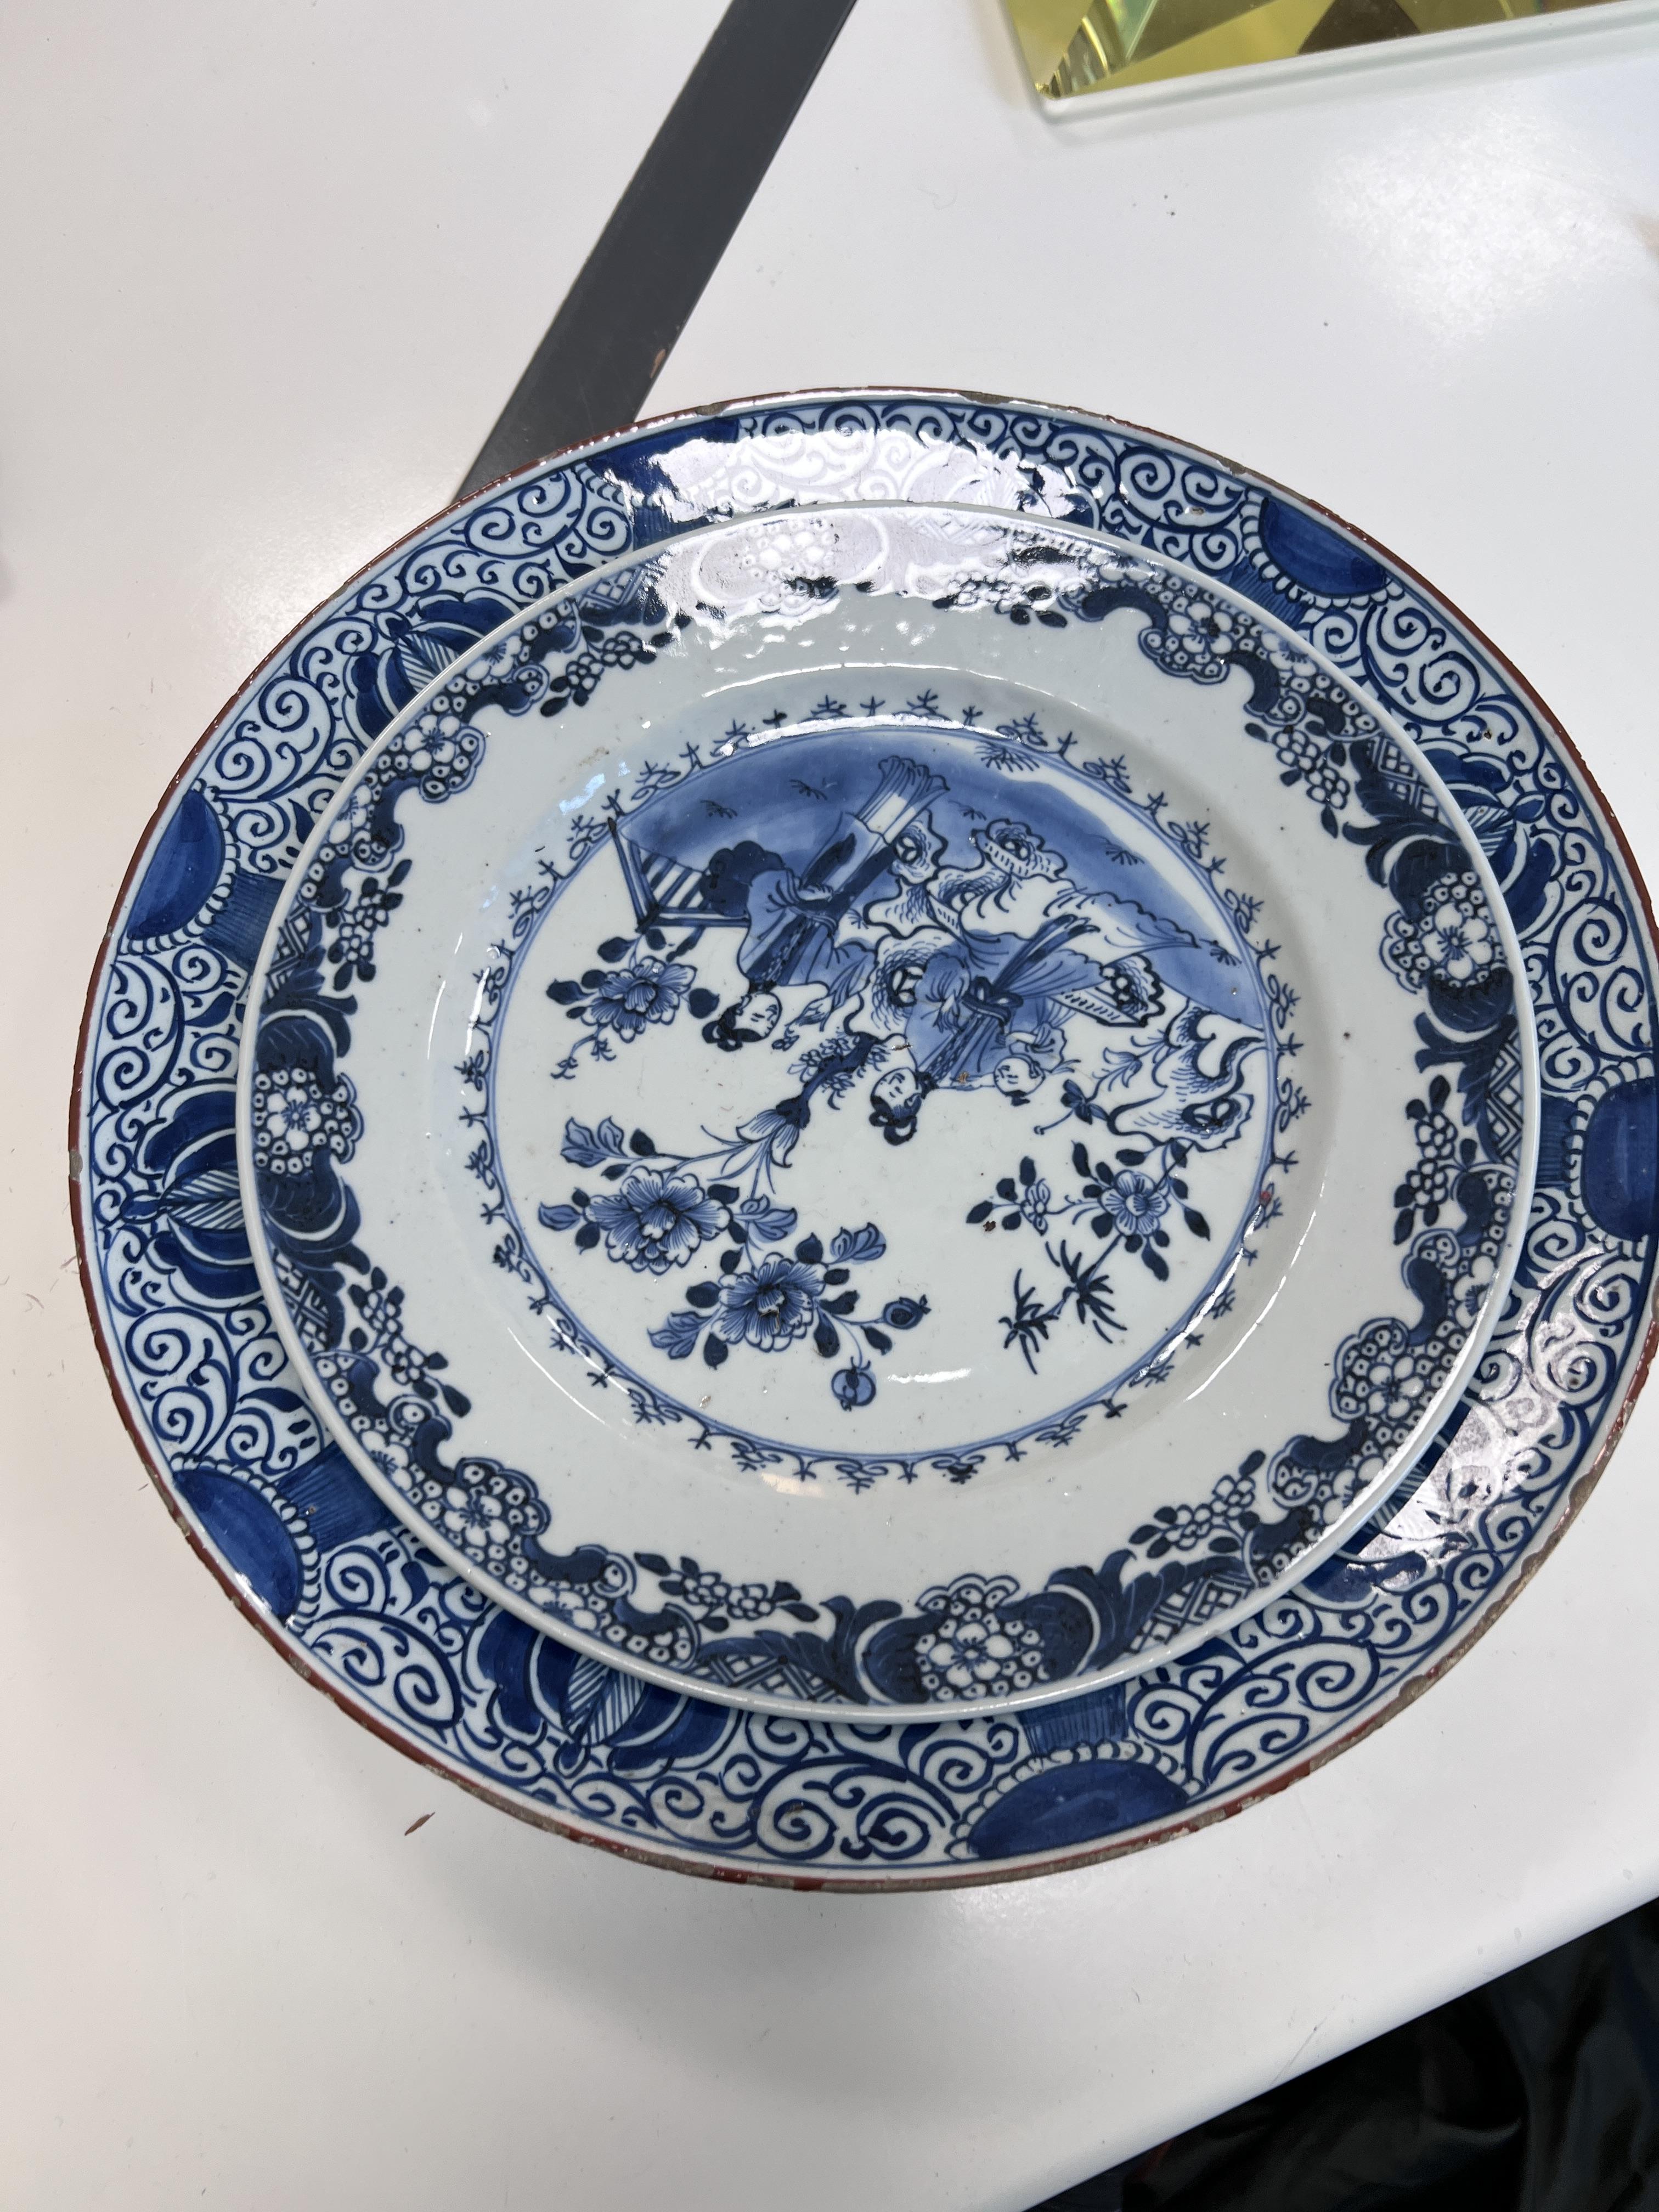 De Porceleyne Bijl, Delft, blauwwit aardewerk 'pauwenbord', 19e eeuw. - Image 4 of 4